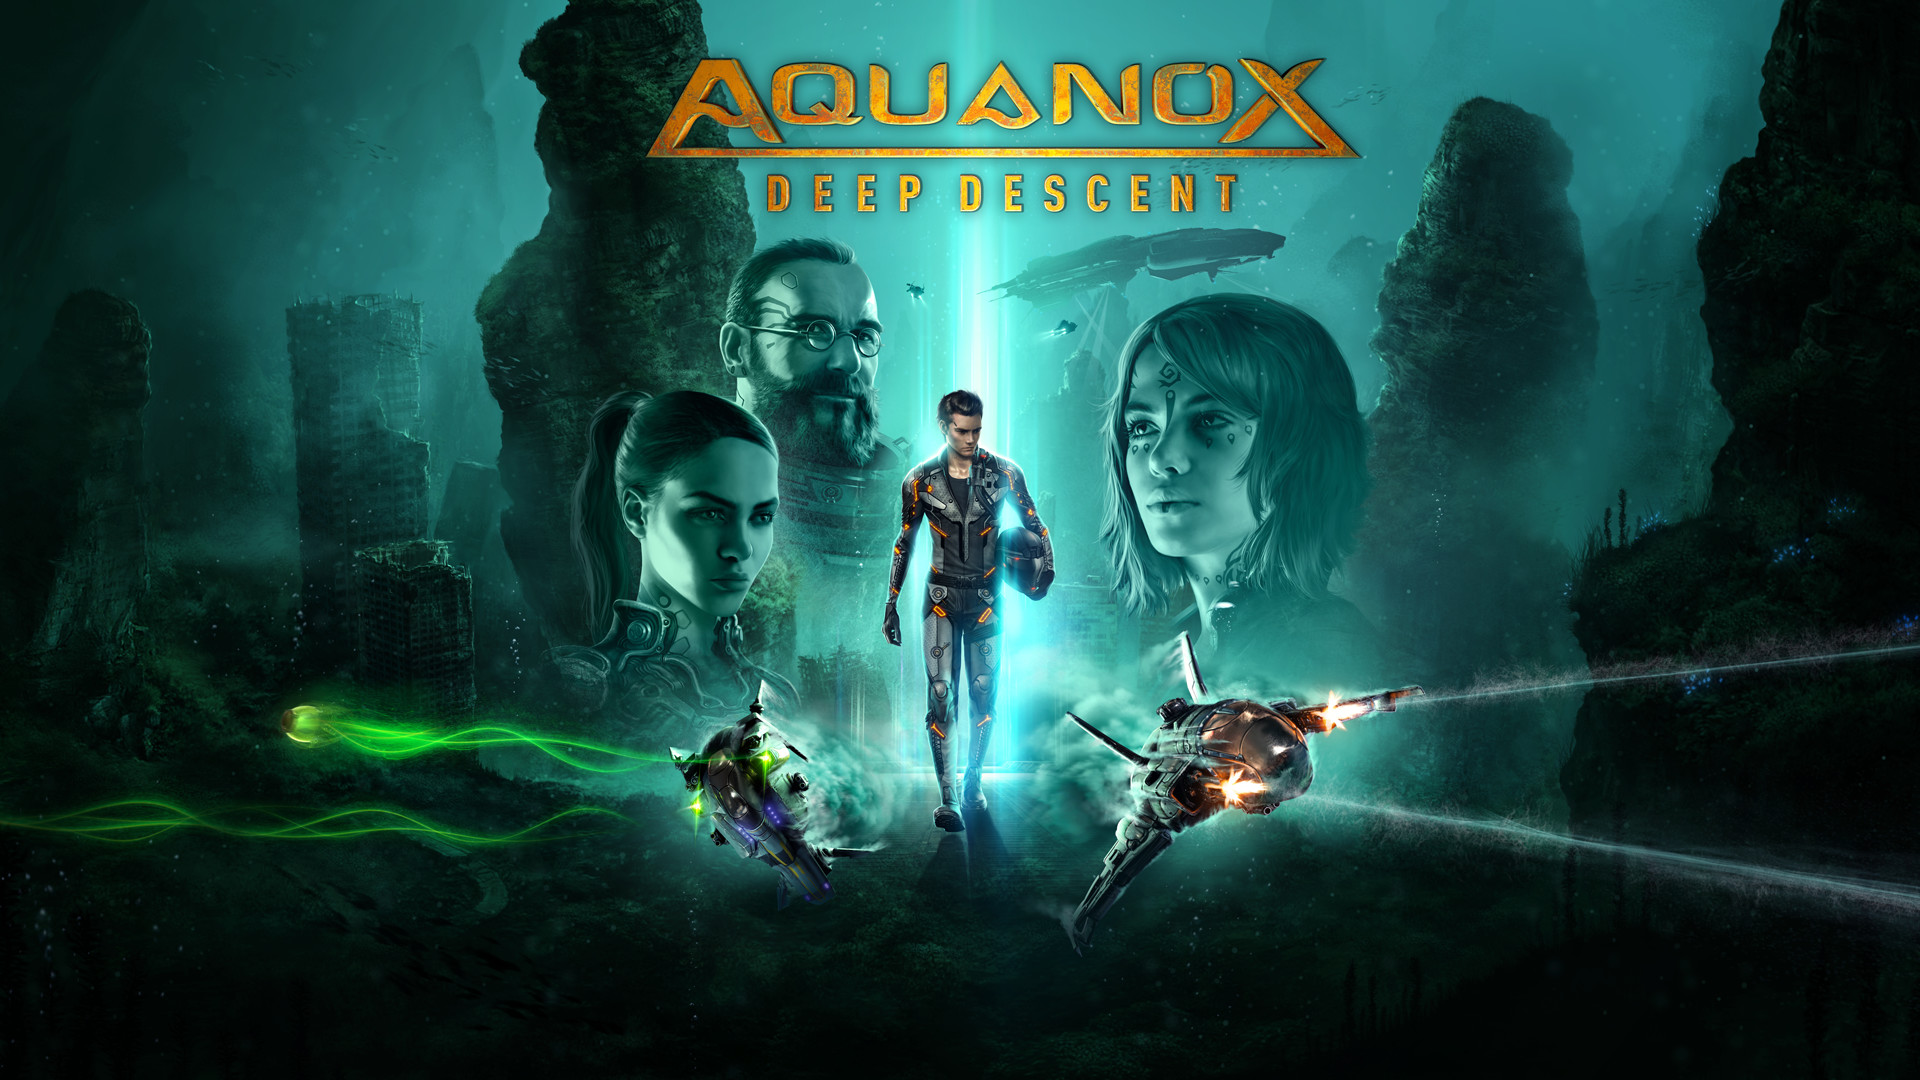 download aquanox deep descent